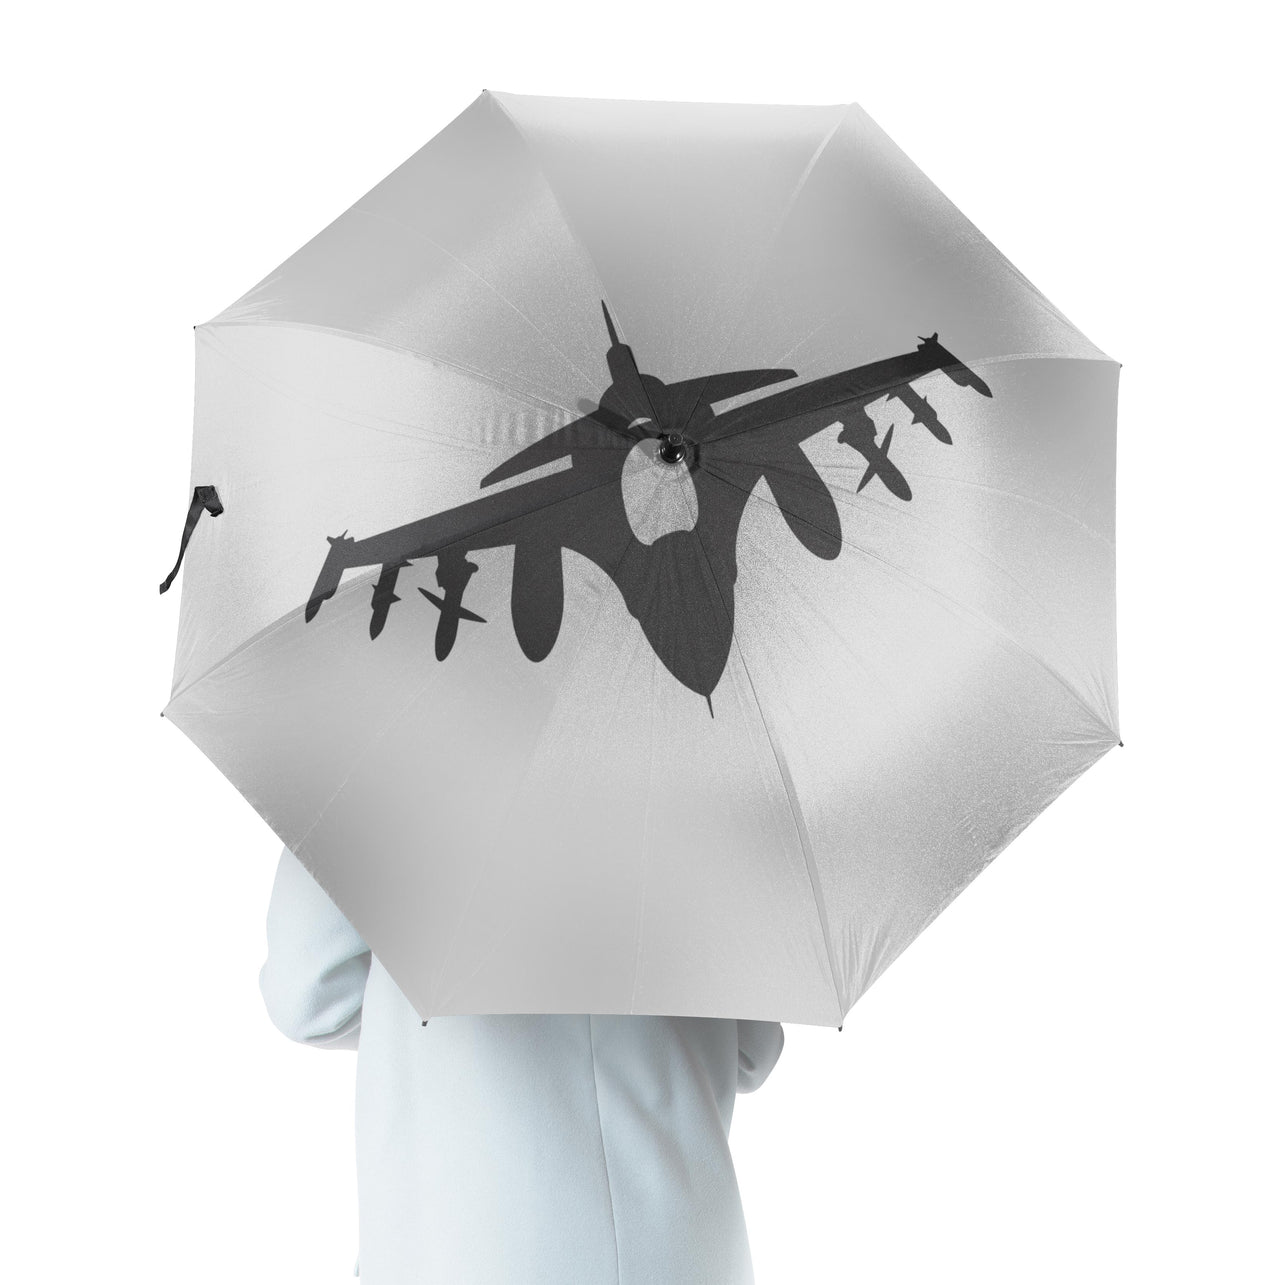 Fighting Falcon F16 Silhouette Designed Umbrella